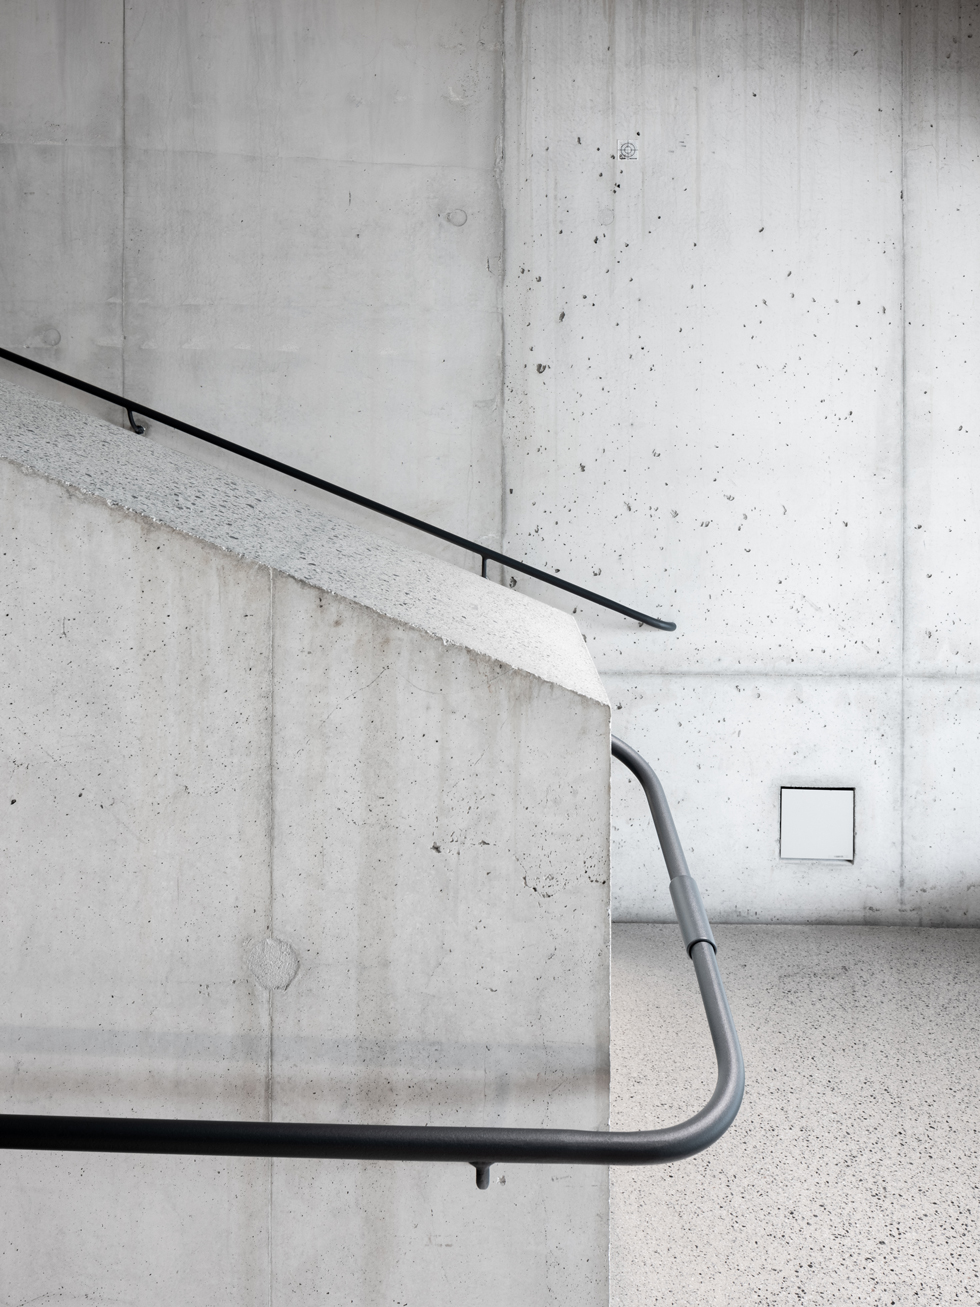 Porrastilojen betonisia yksityiskohtia. Näyttely- ja aula- sekä porrastiloissa on hiotut betonilattiat. Kuva: Christoffer Grimshorn